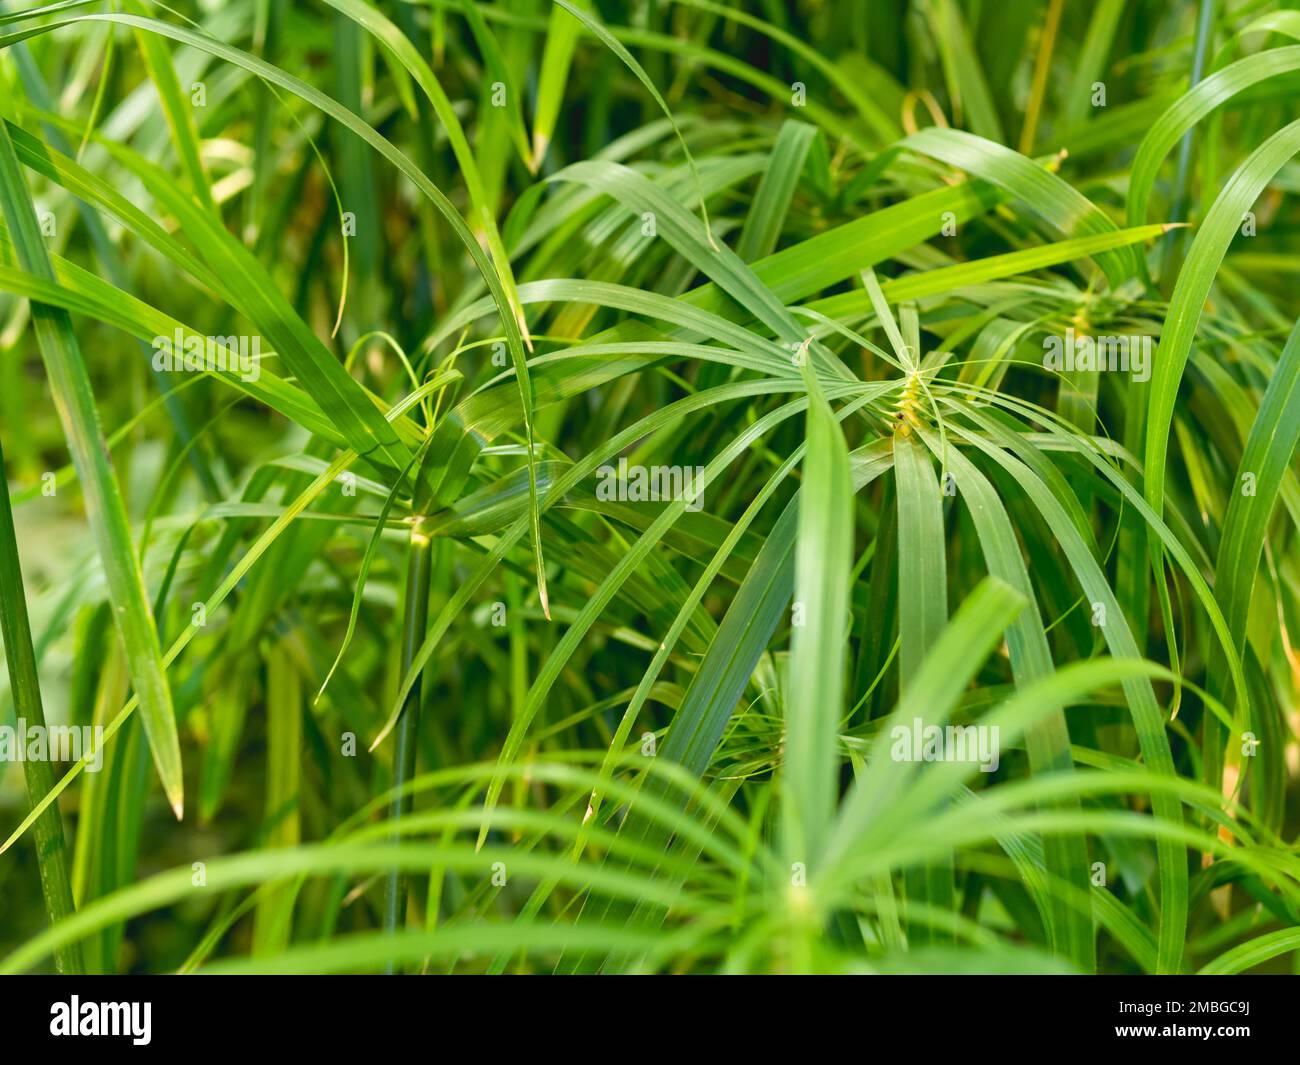 Vollgerahmtes Foto von Cyperus alternifolius, Schirmpapyrus, Schirmseide oder Schirmpalme. Grünes Laub einer grasähnlichen Pflanze. Stockfoto